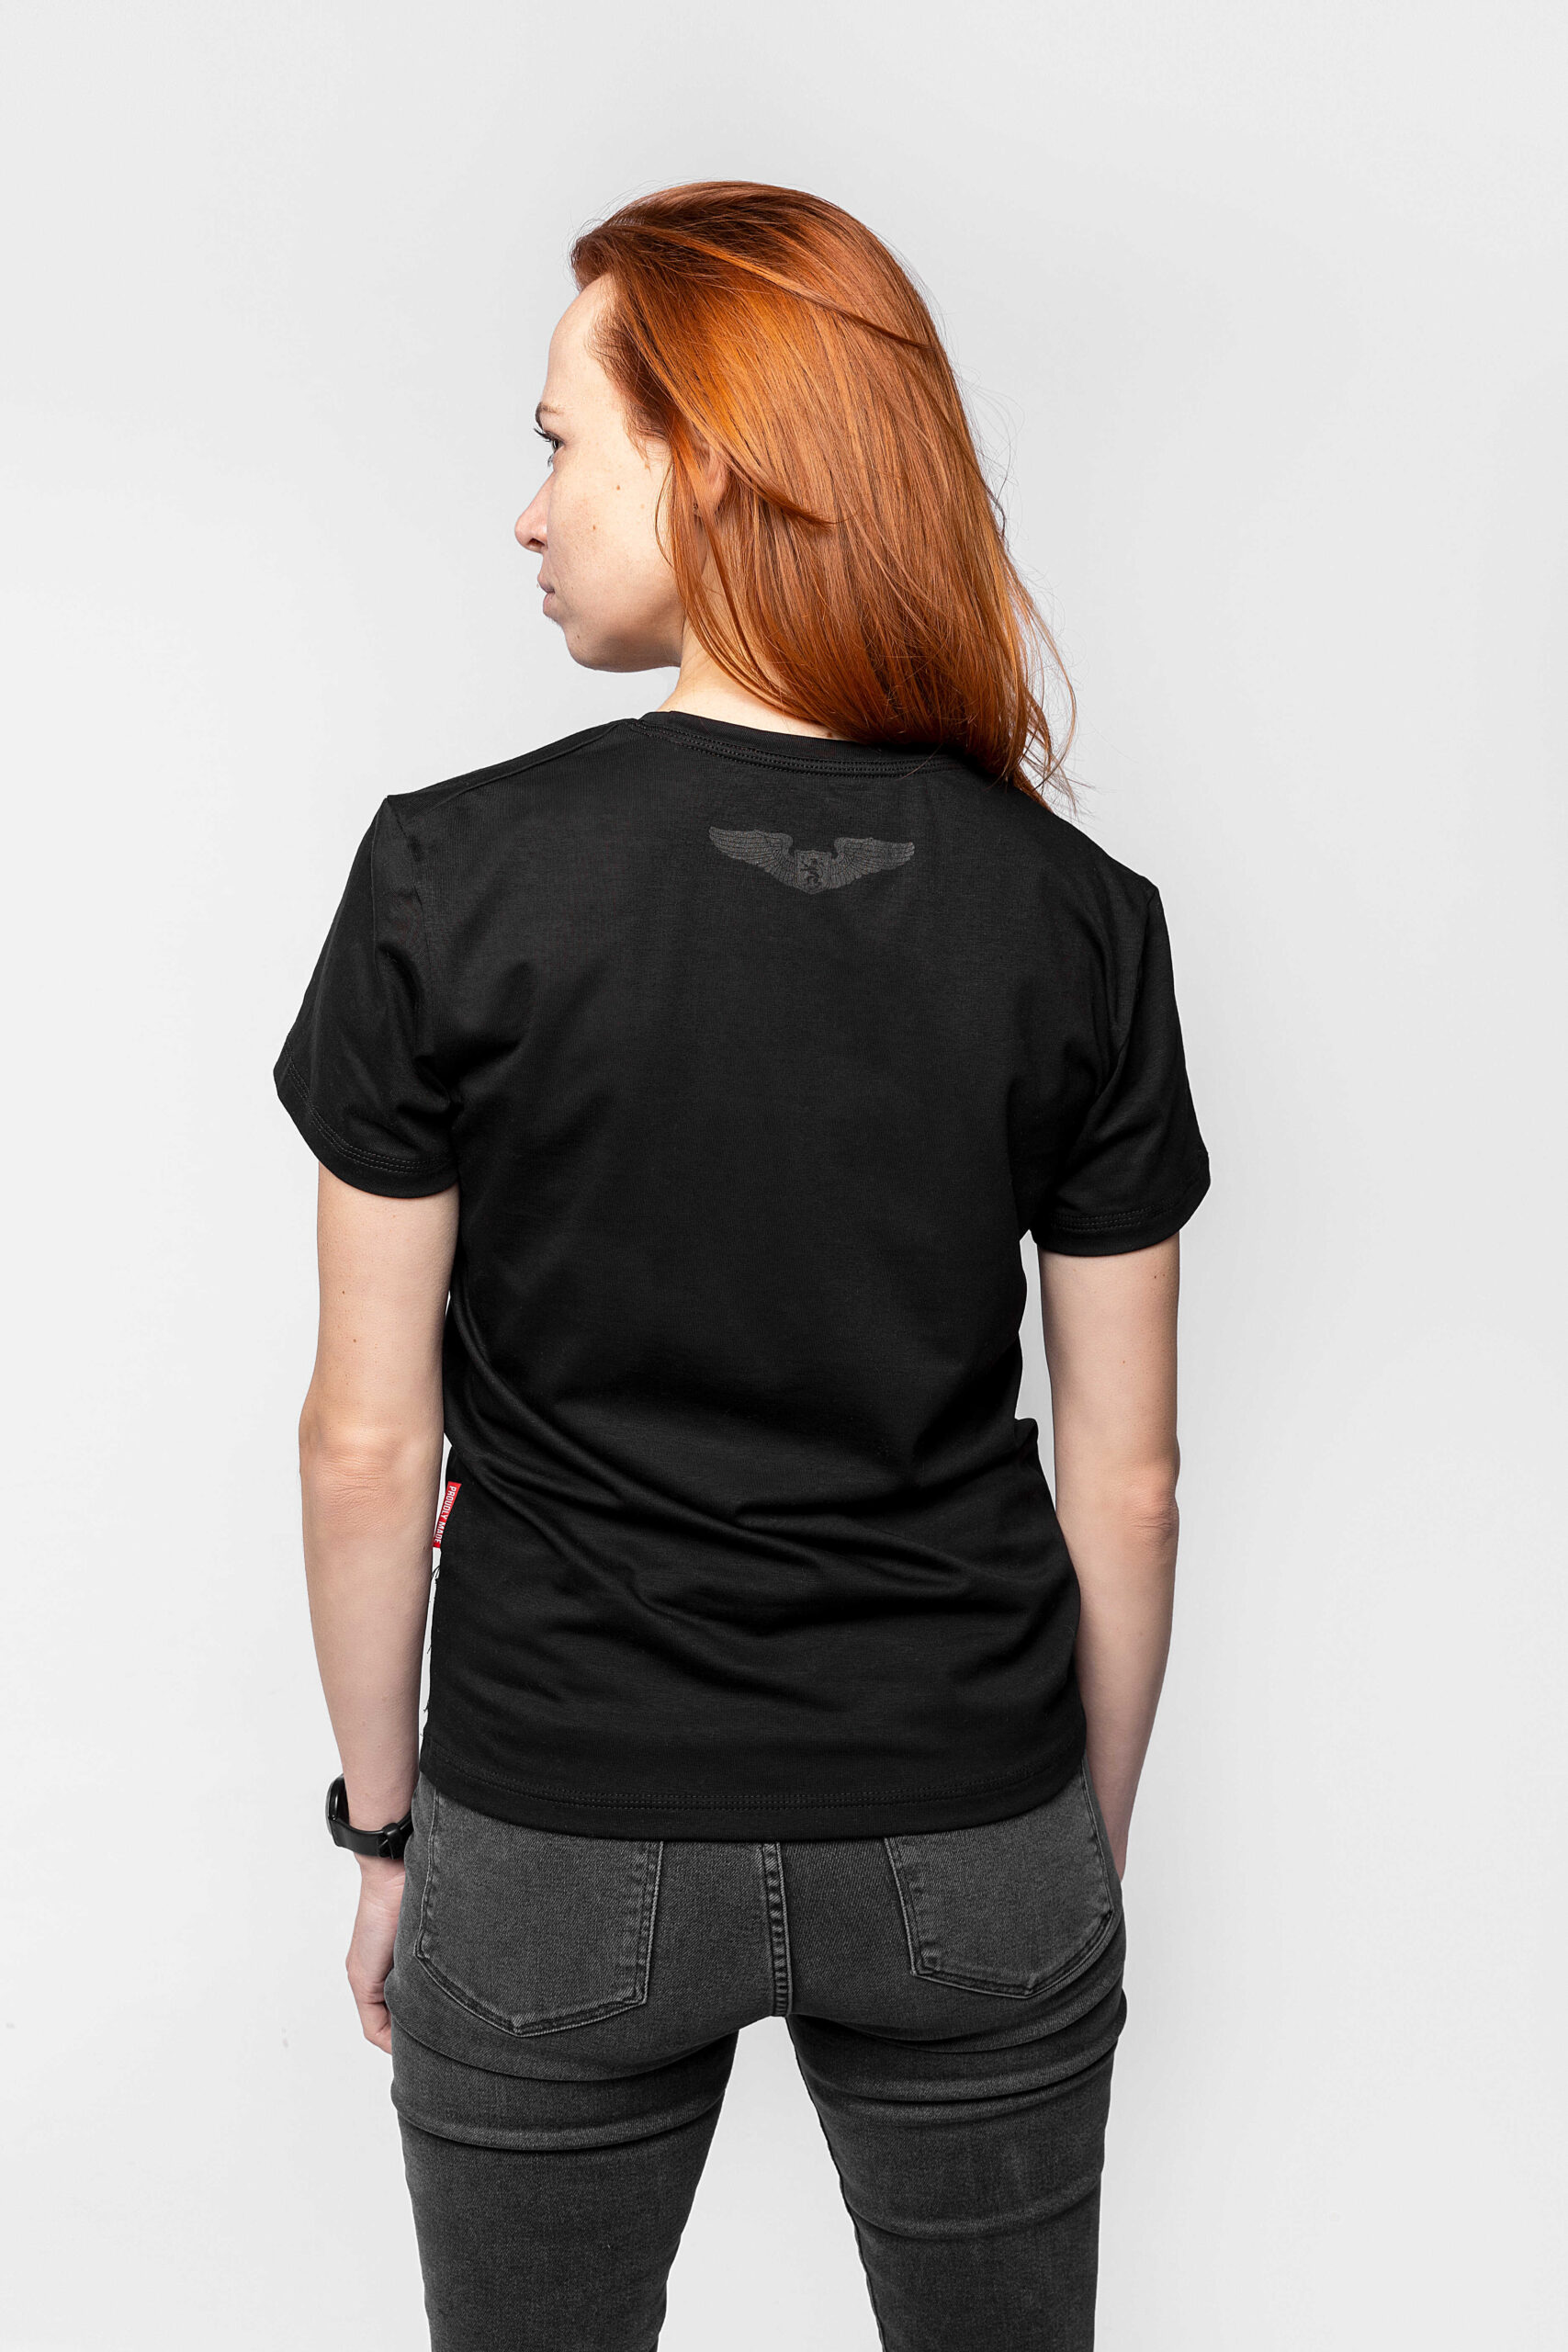 Women's T-Shirt Statement. Color black. 1.